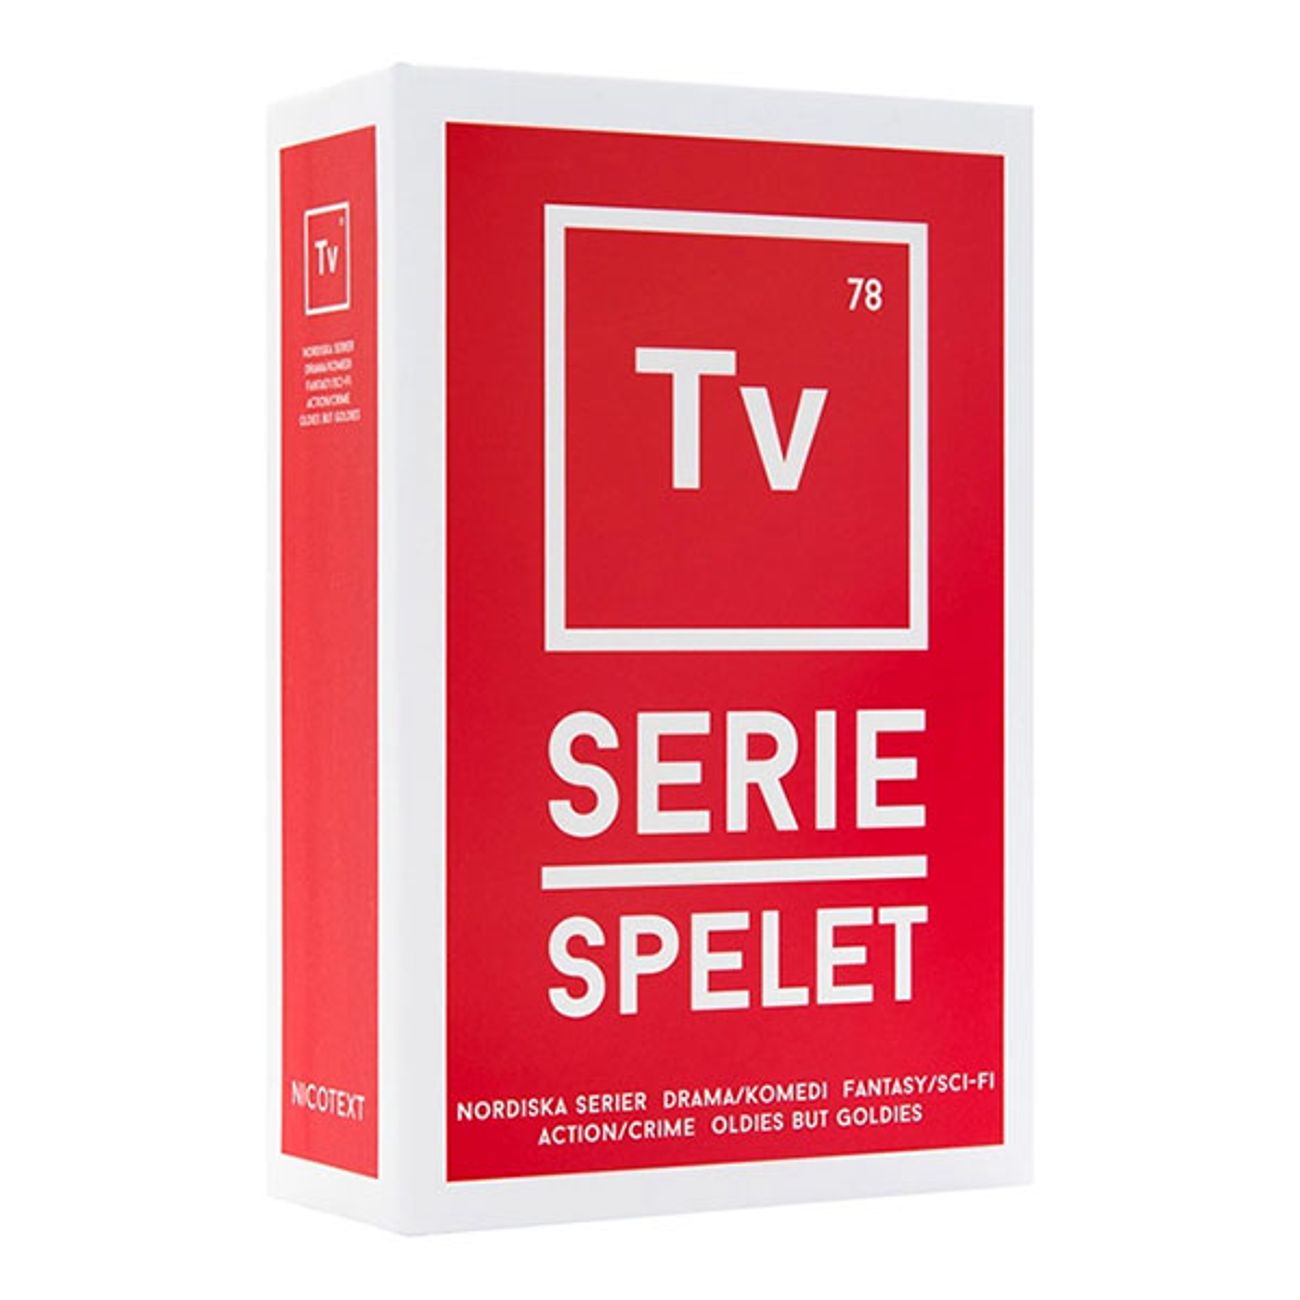 tv-seriespelet-1